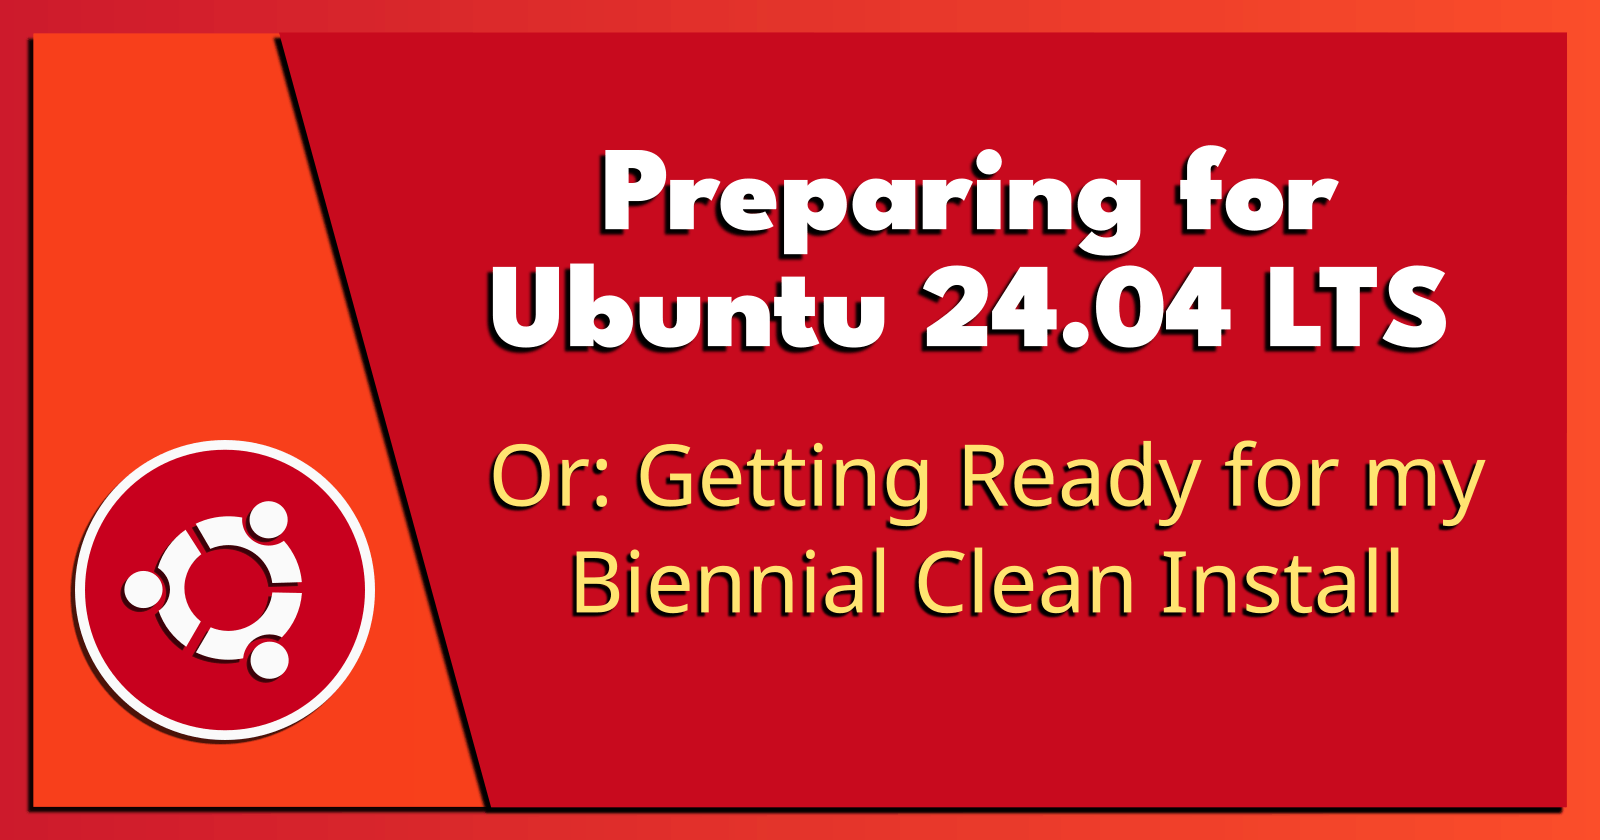 Preparing for Ubuntu 24.04 LTS.